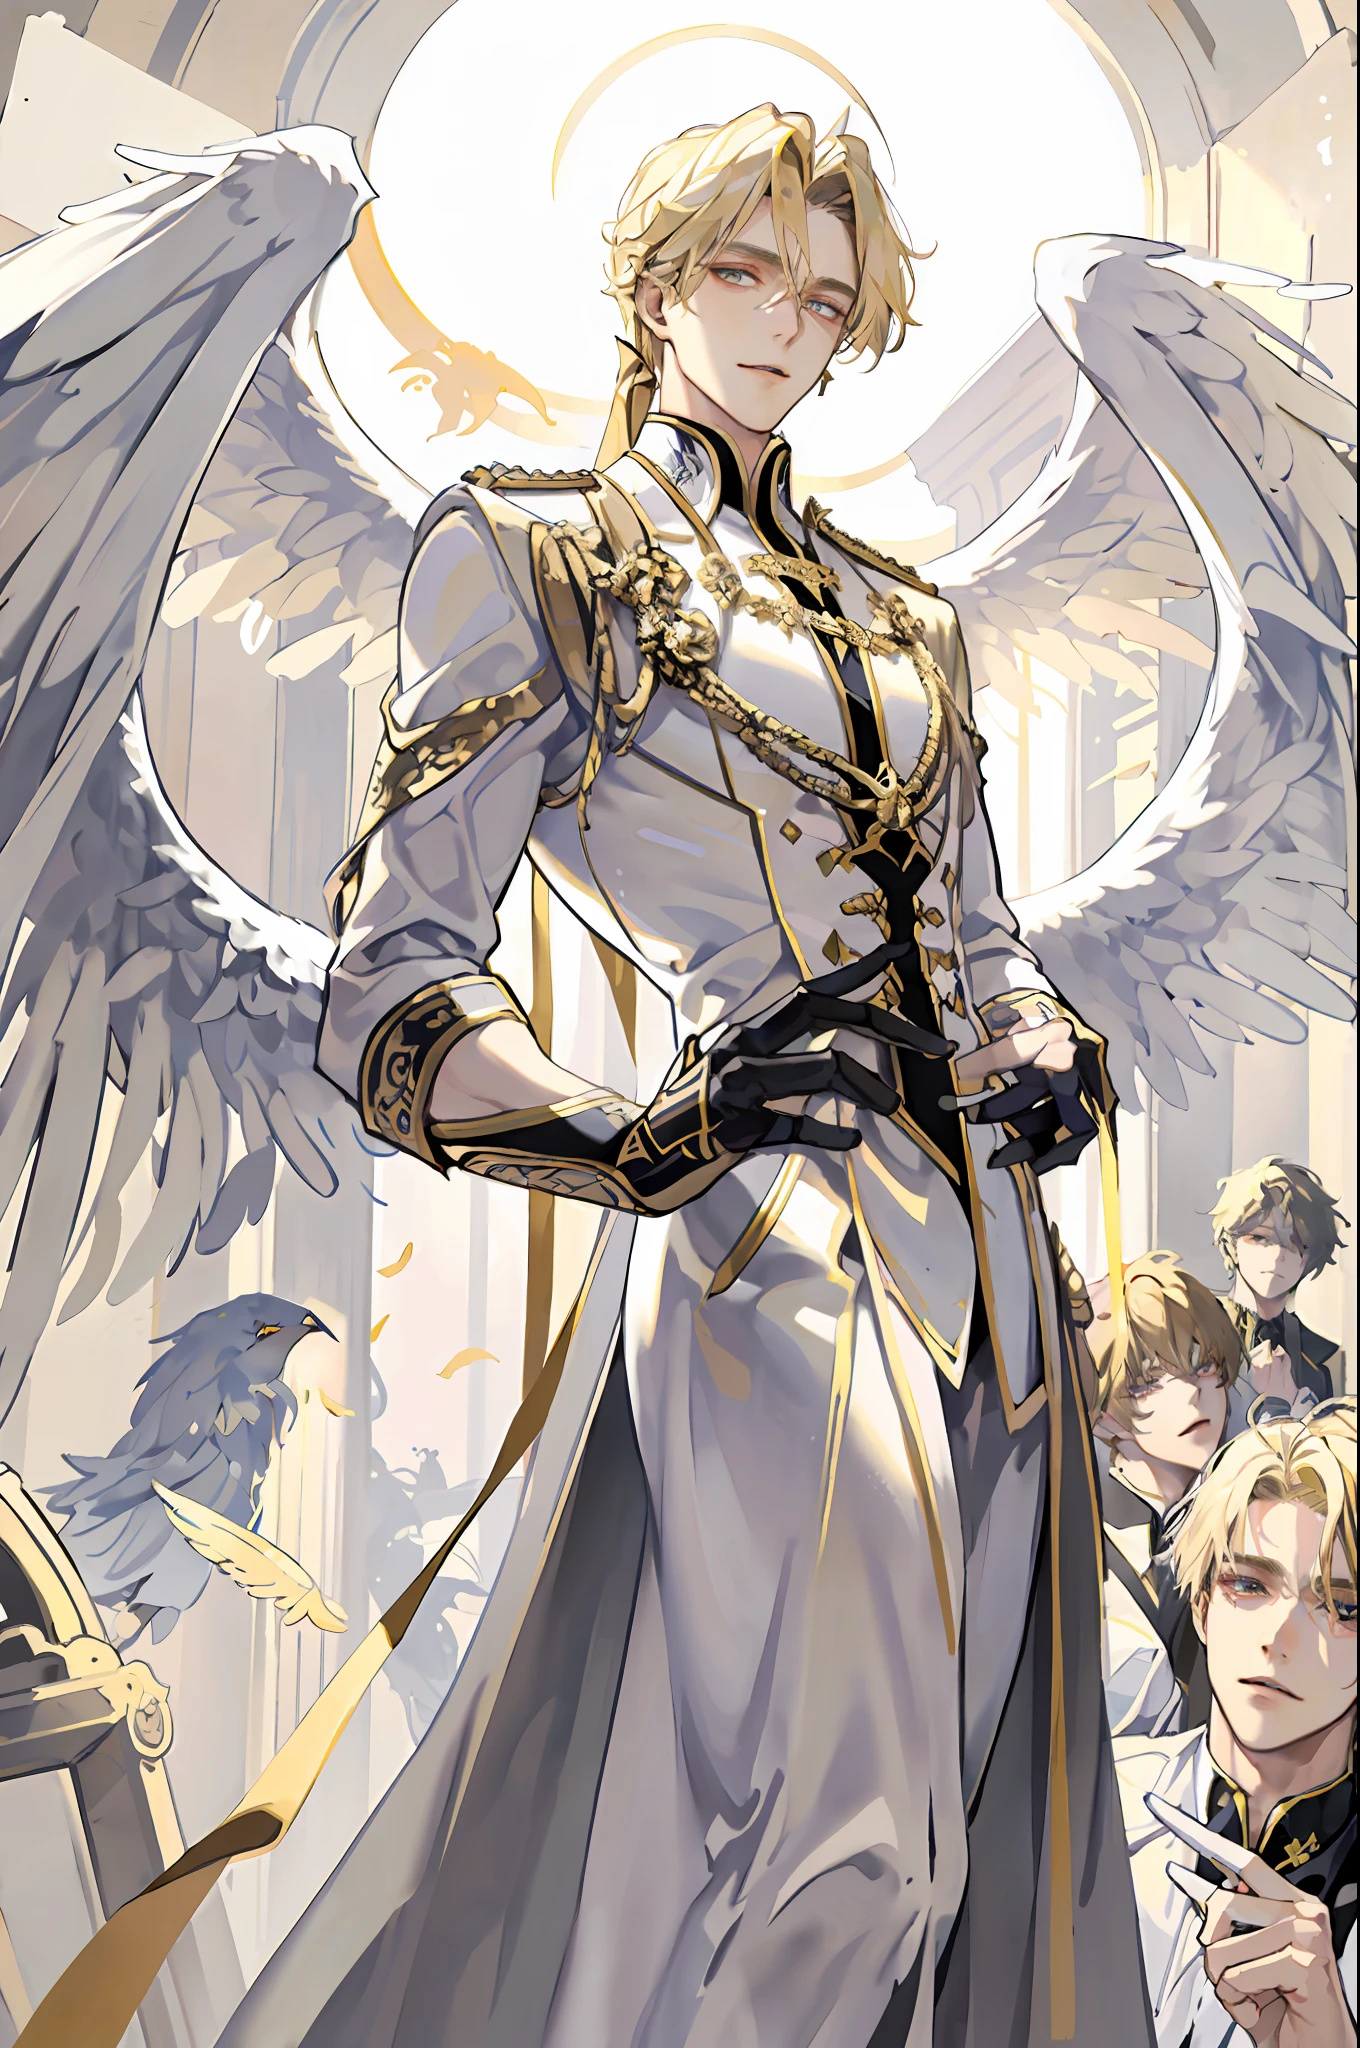 ((傑作, 最高品質)), 1人, 堕天使ルシフェル, とてもハンサム, ブロンドとミディアムヘア, 薄い, 背中の巨大で美しい翼, 白い服を着て, 邪悪な表現, 視聴者を見て, 背景には金色の雲